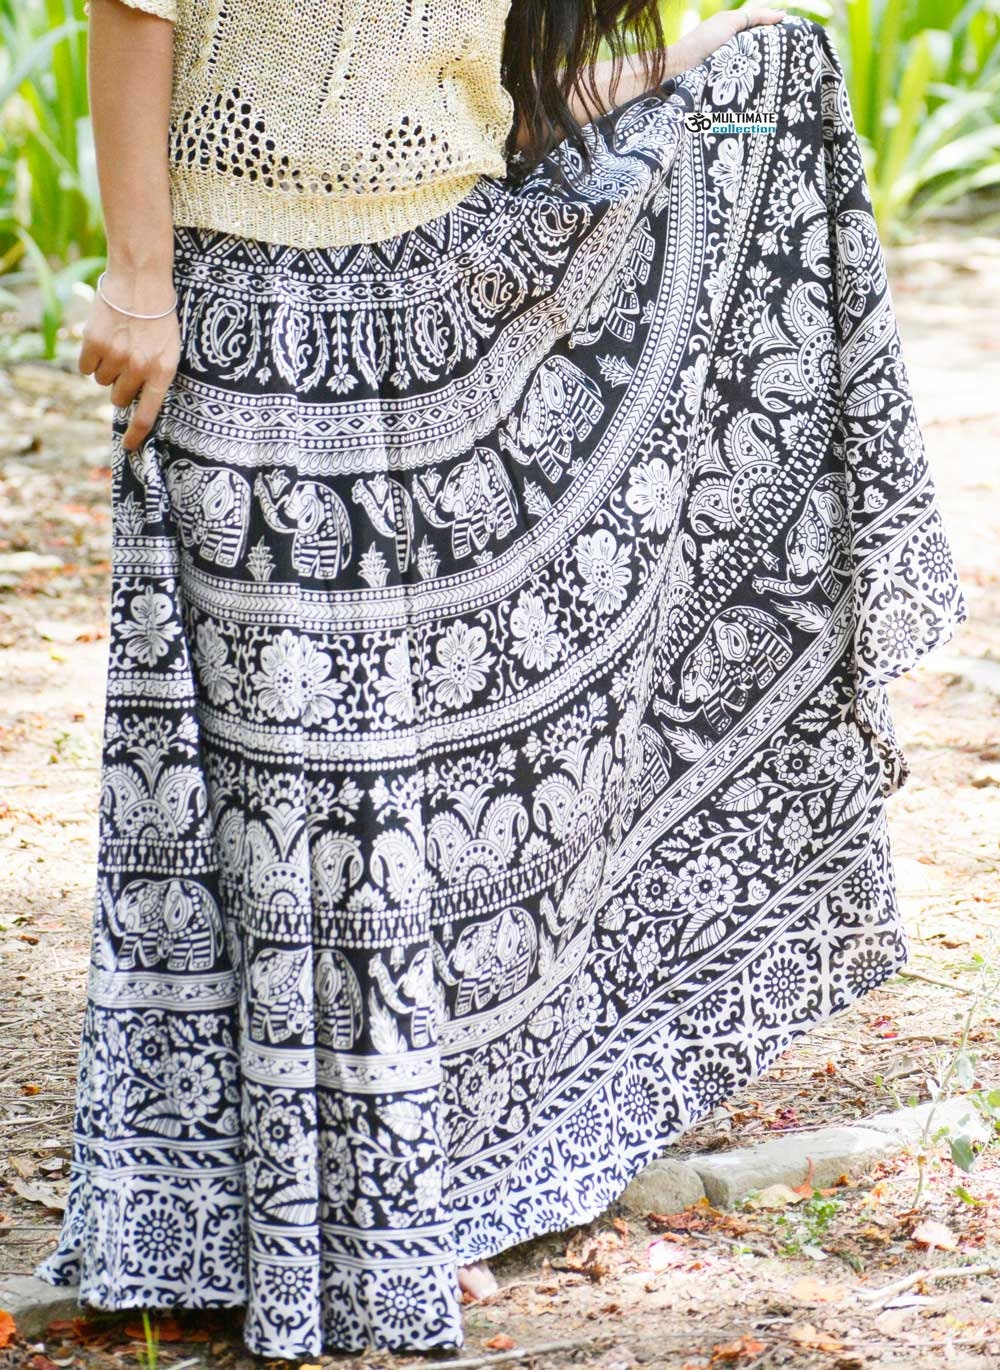 Indian Boho skirt, Mandala skirt, Elephant gypsy skirt, Bohemian maxi skirt Hippie skirt, cotton ethnic skirt, Indian Full skirt for women